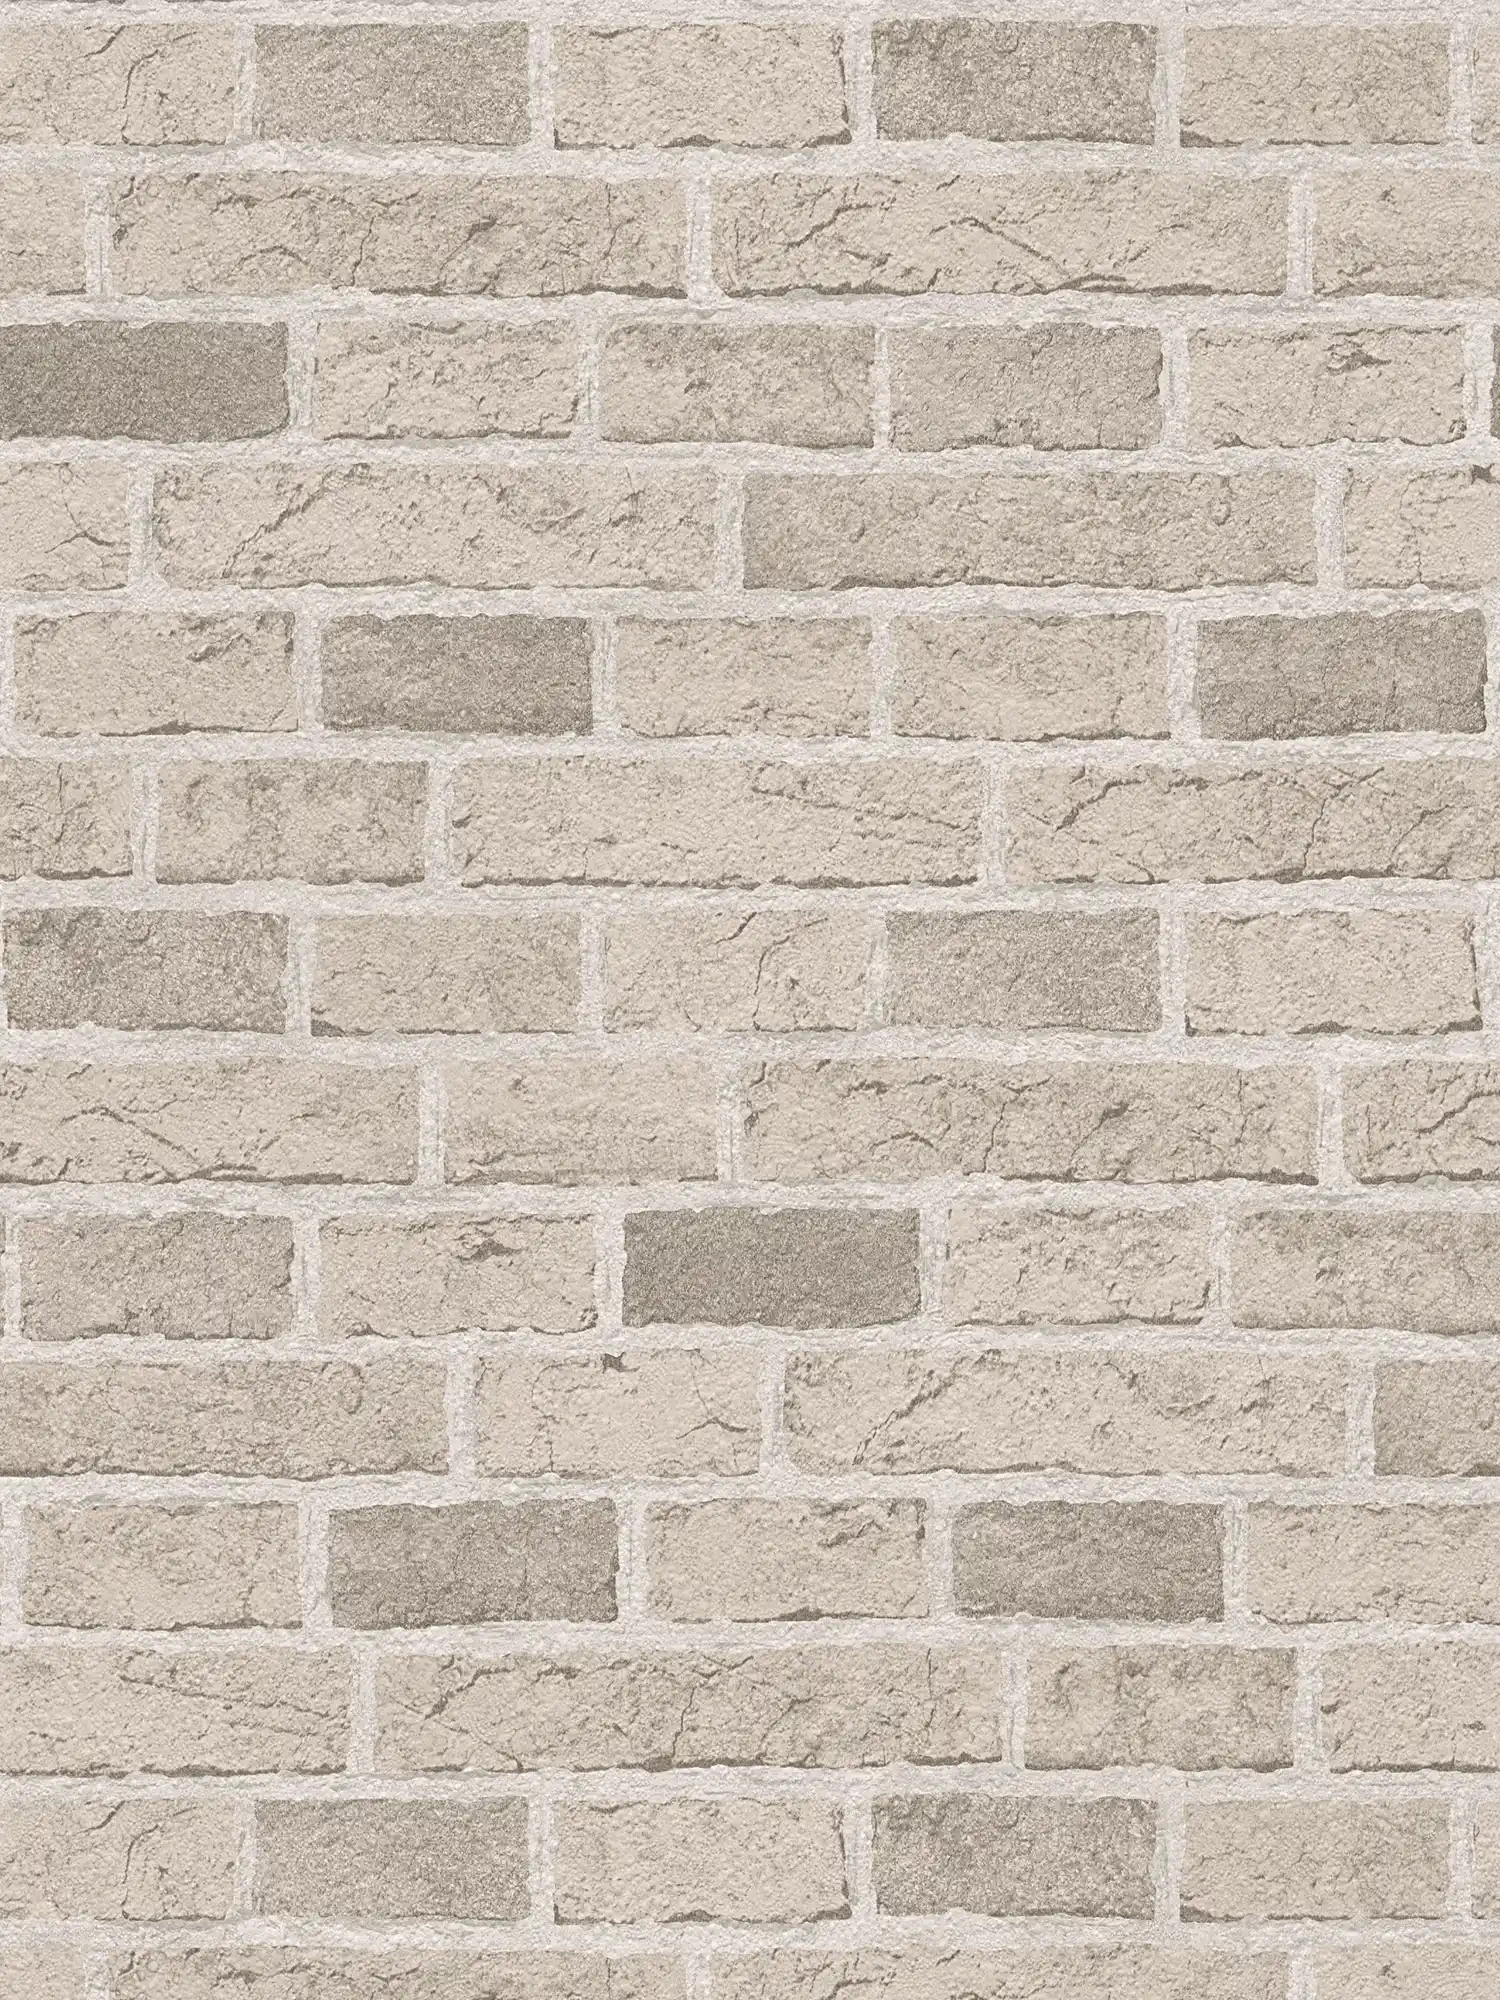         Steintapete mit Backsteinmauer rustikal & detailliert – Creme, Beige
    